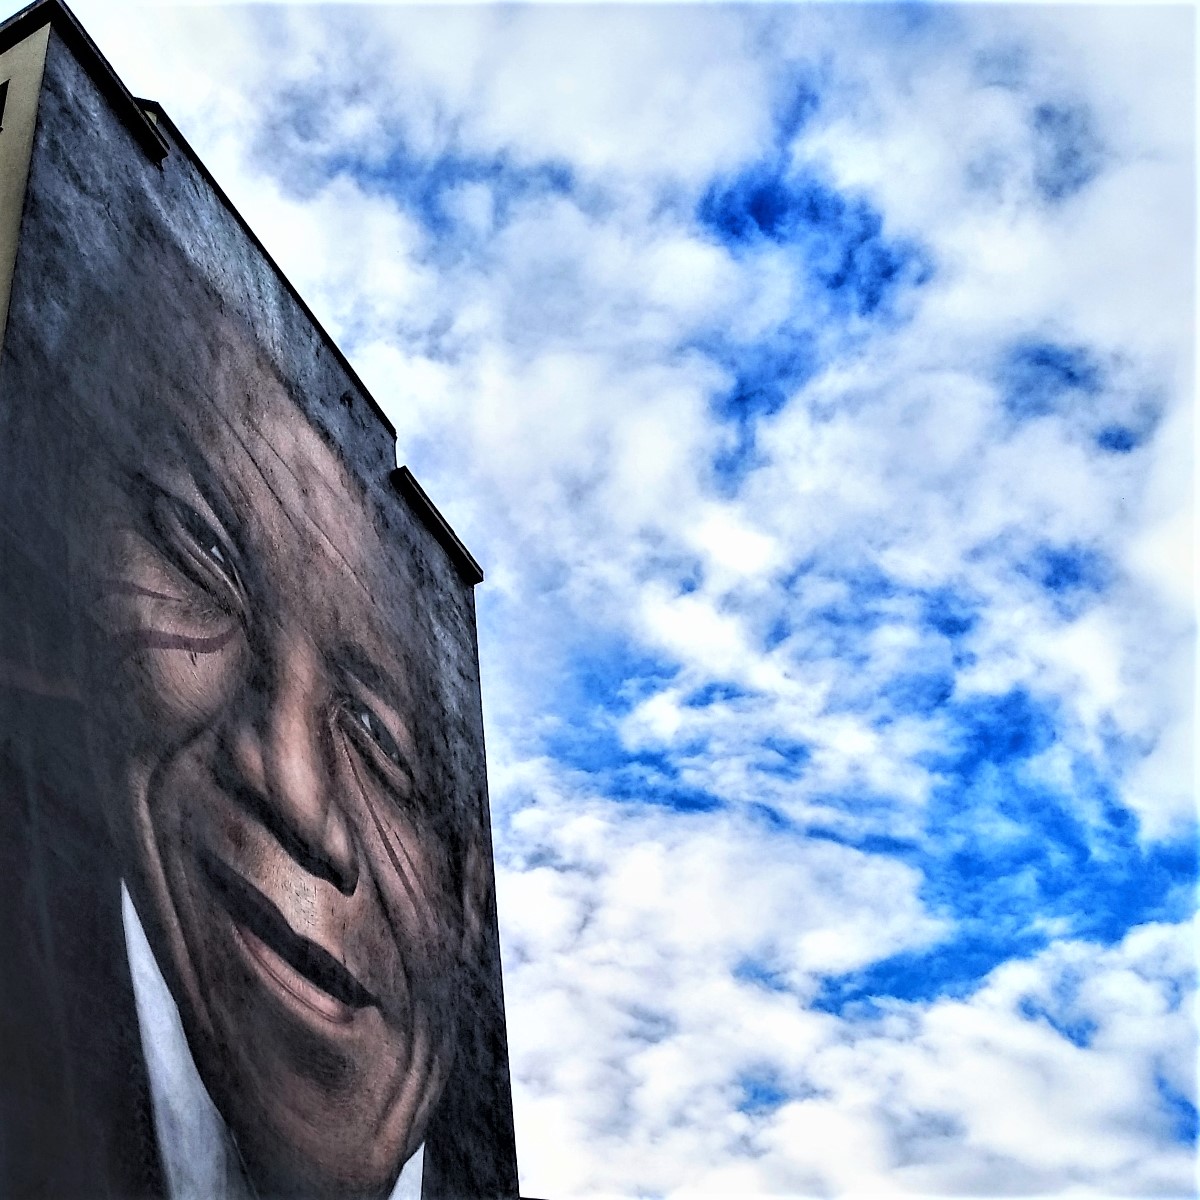 La street art ‘invade’ i quartieri (foto Antonello Serino MET)